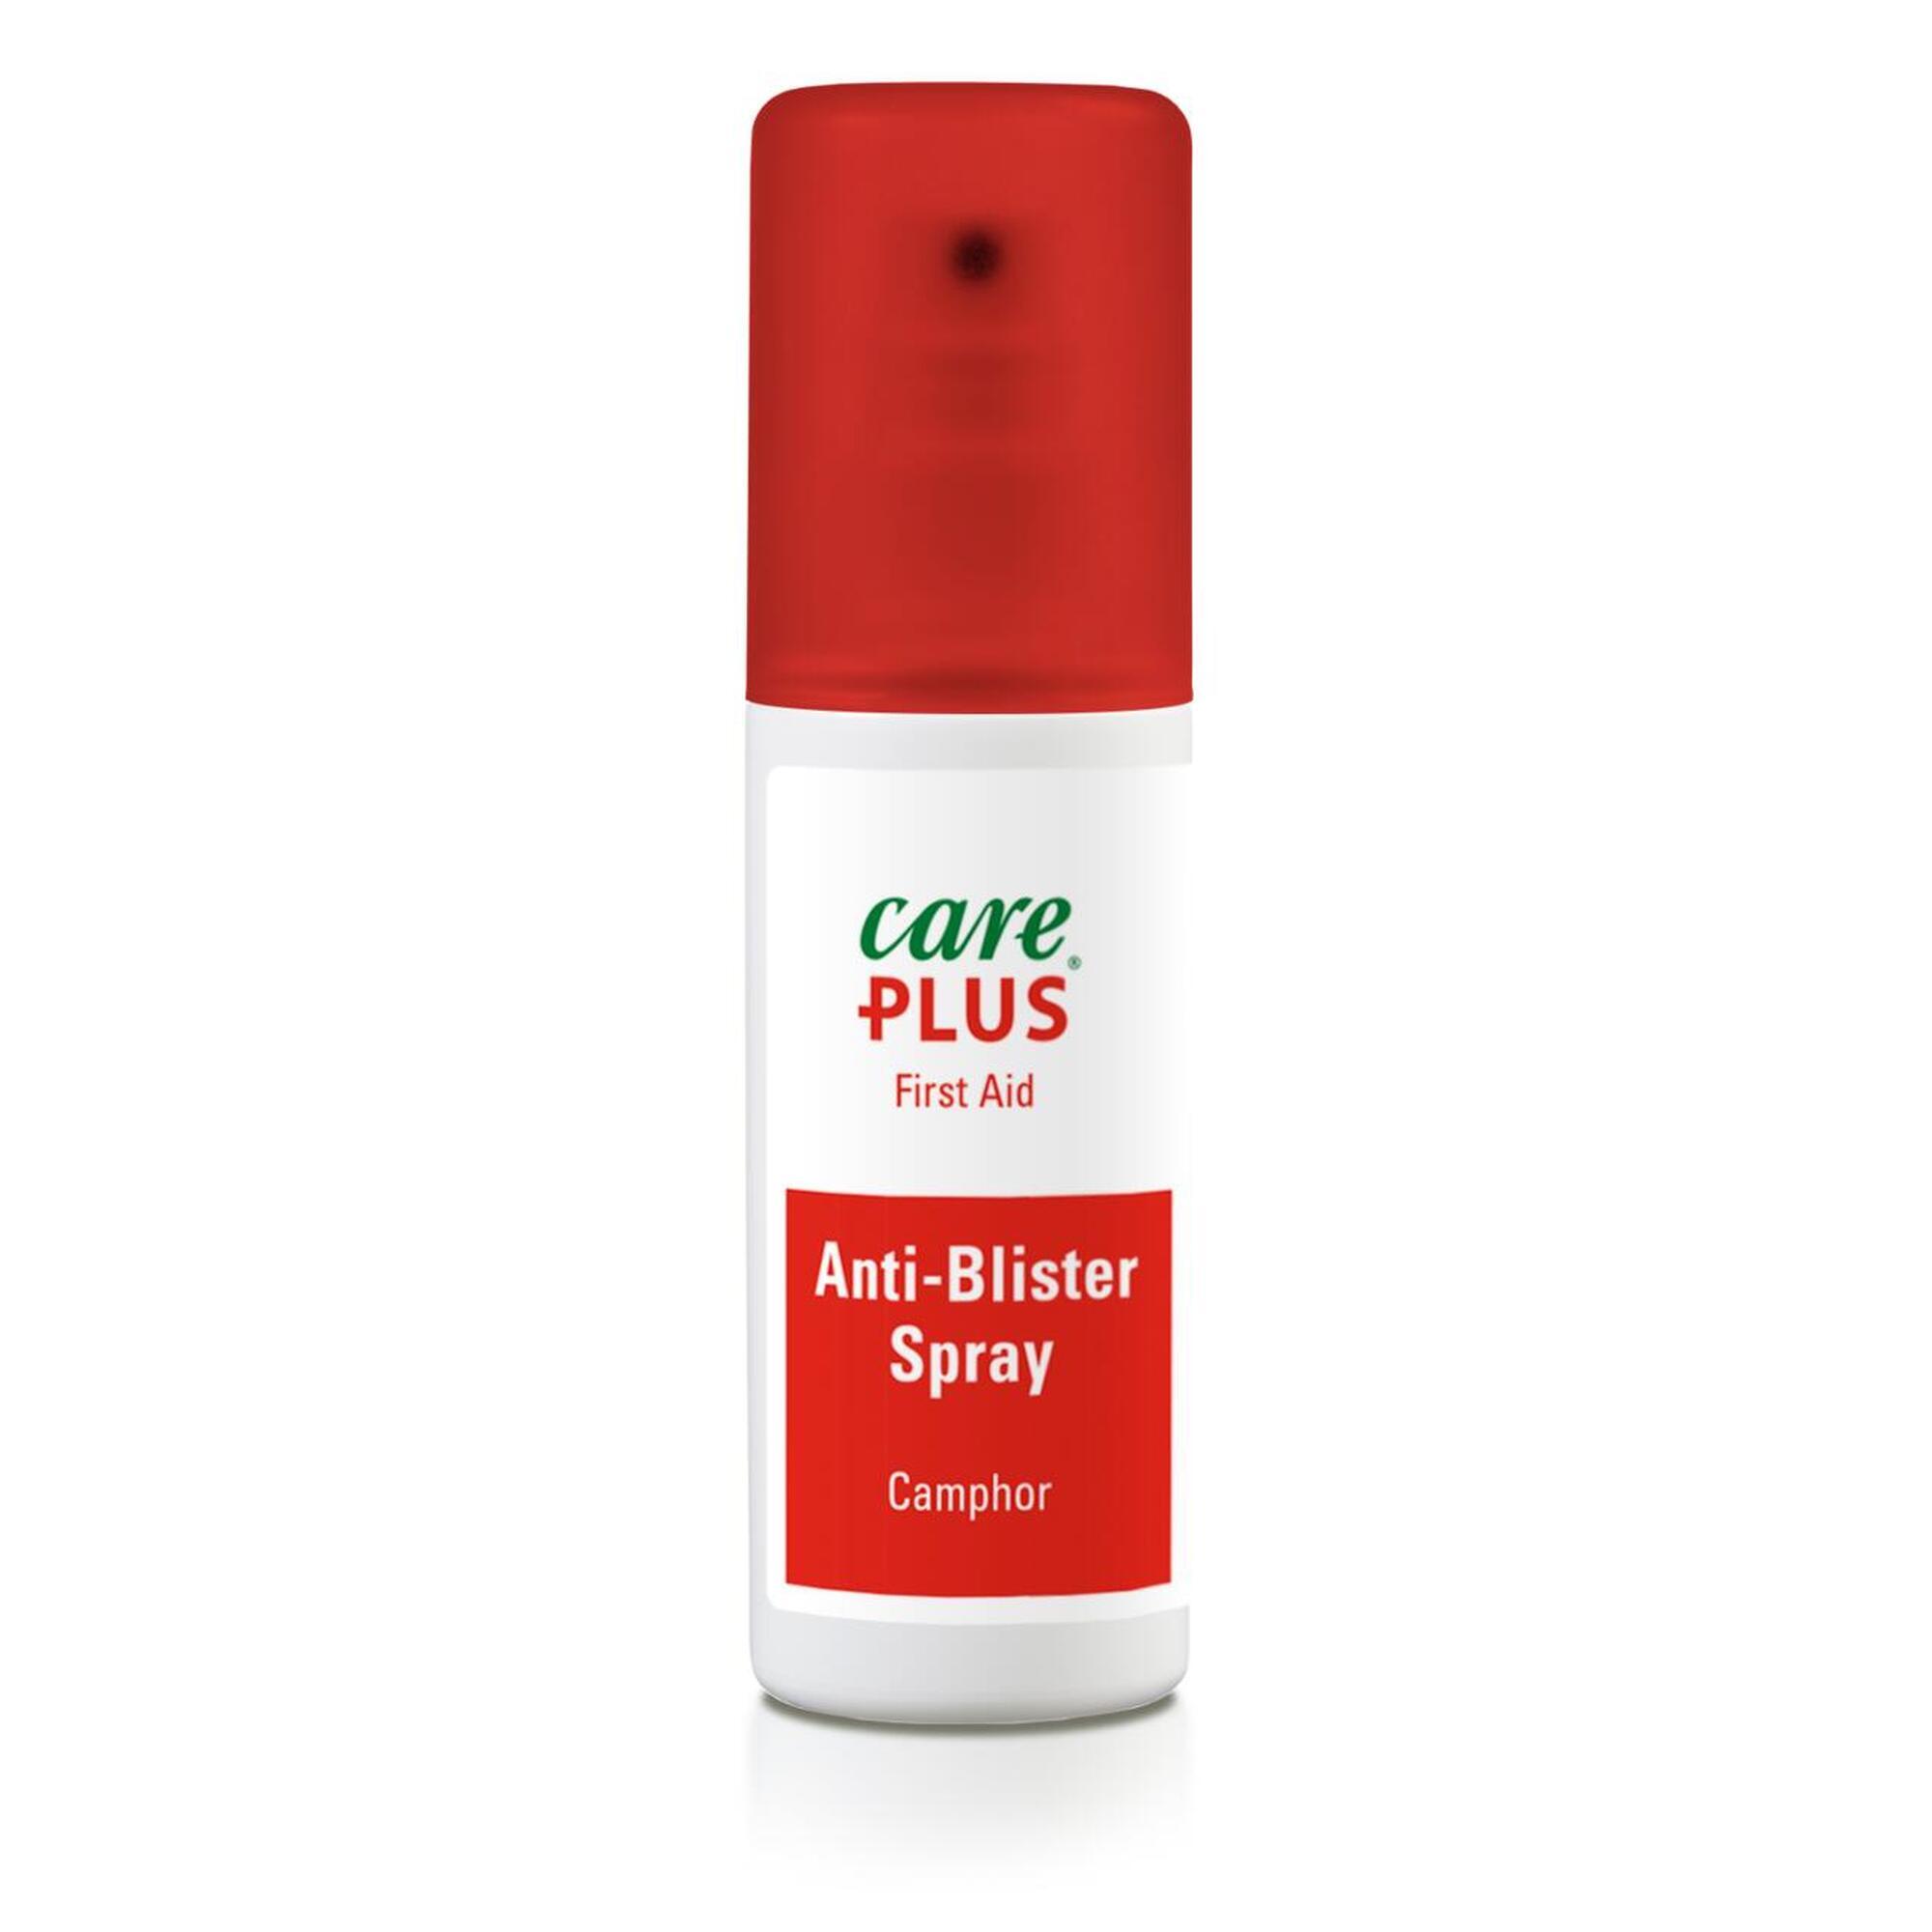 Care Plus Anti-Blister Spray - 50 ml